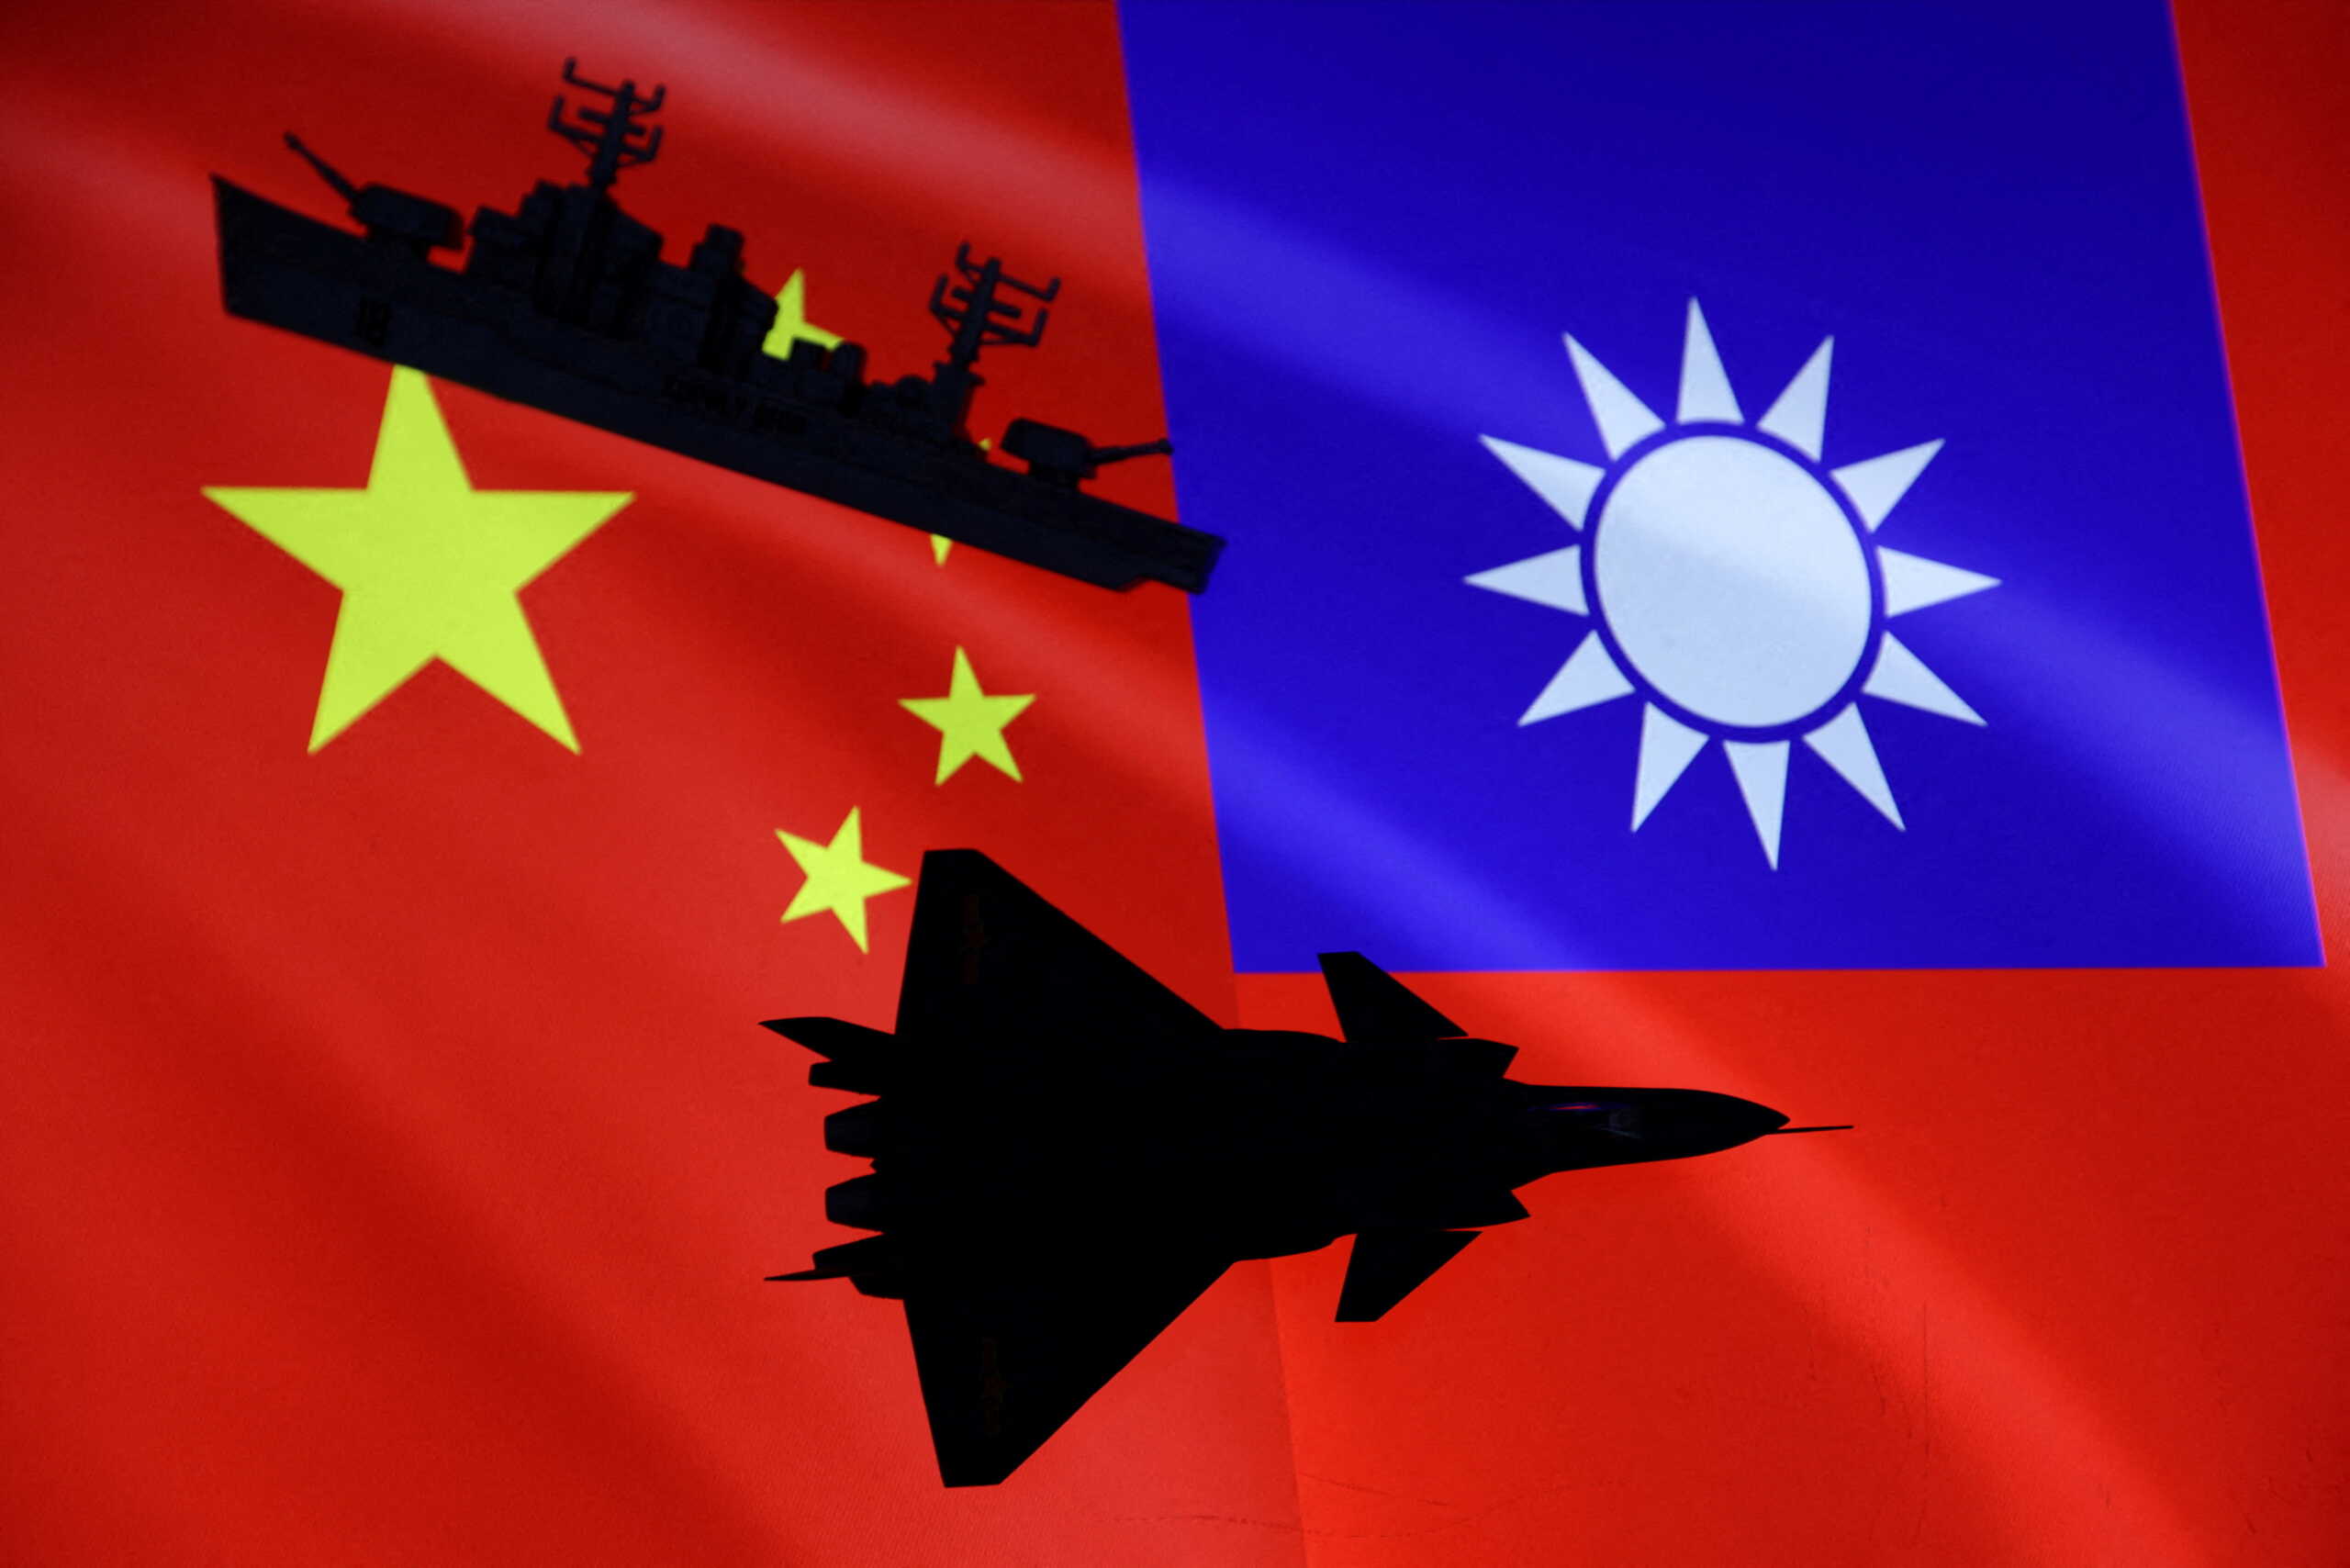 Ταϊβάν: 27 πολεμικά πλοία και μαχητικά αεροσκάφη της Κίνας στην ζώνη αναγνώρισης